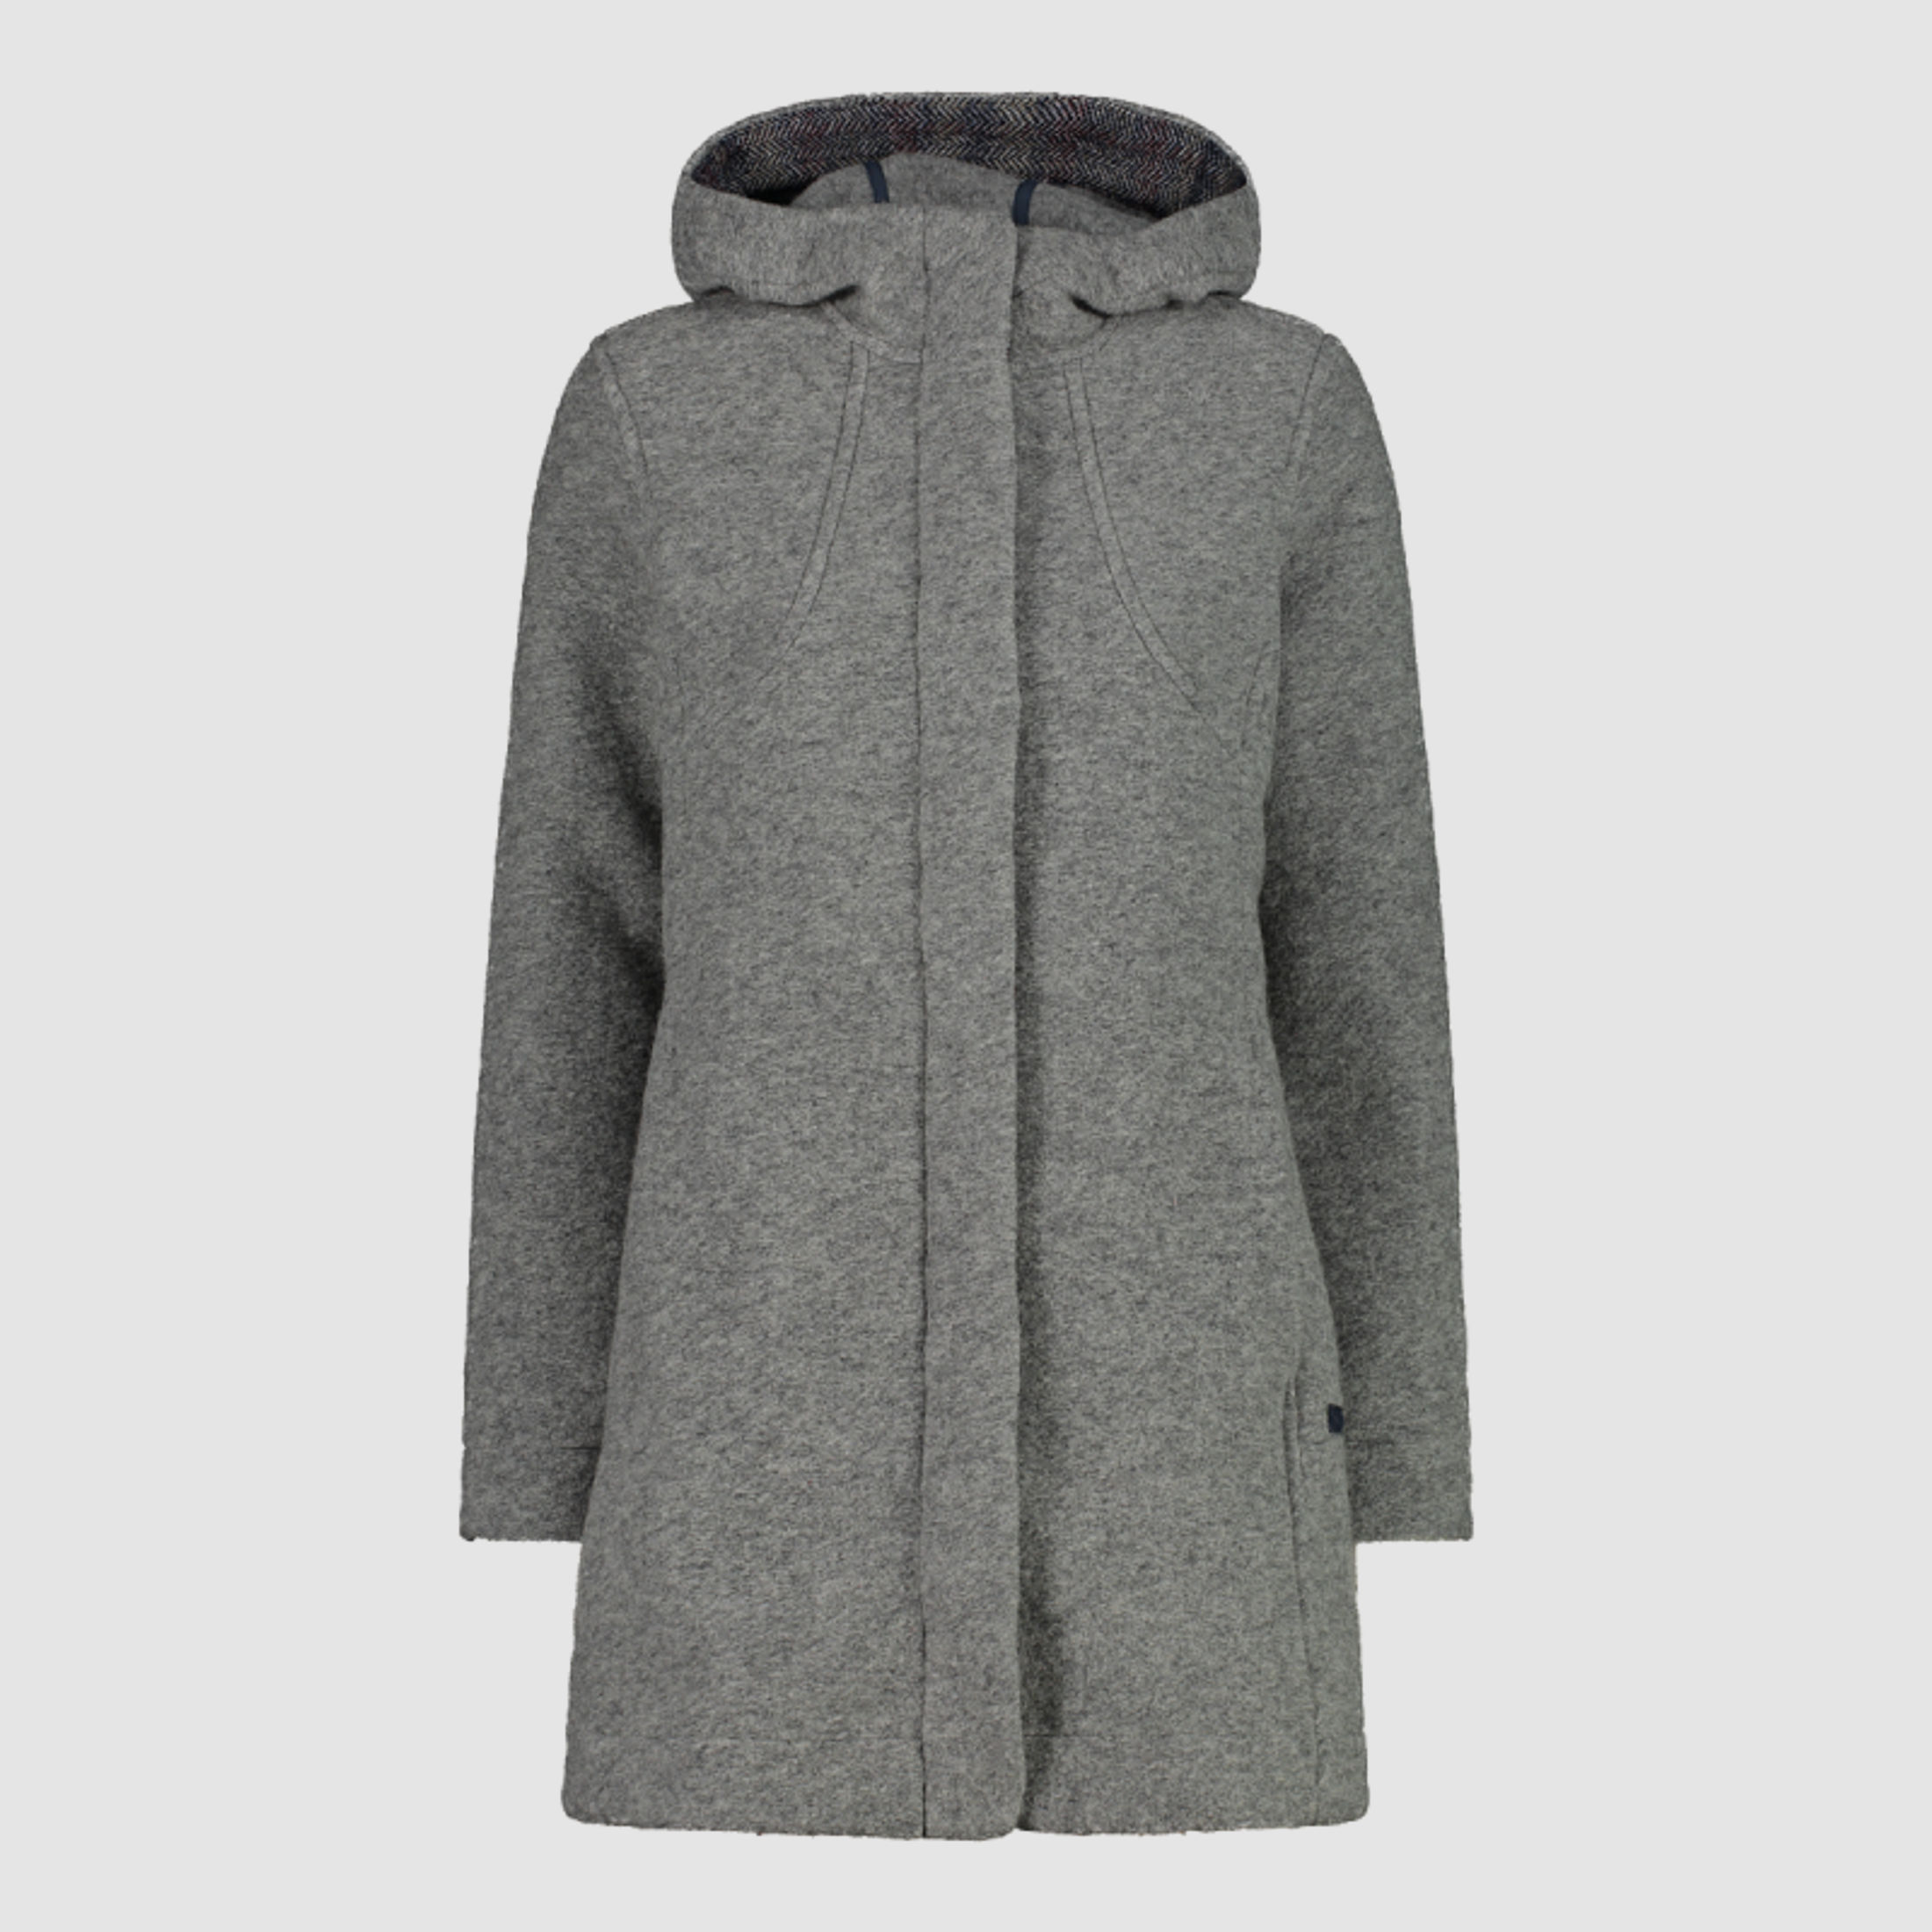 CMP Damen Jacke Coat Fix Hood Grau 42